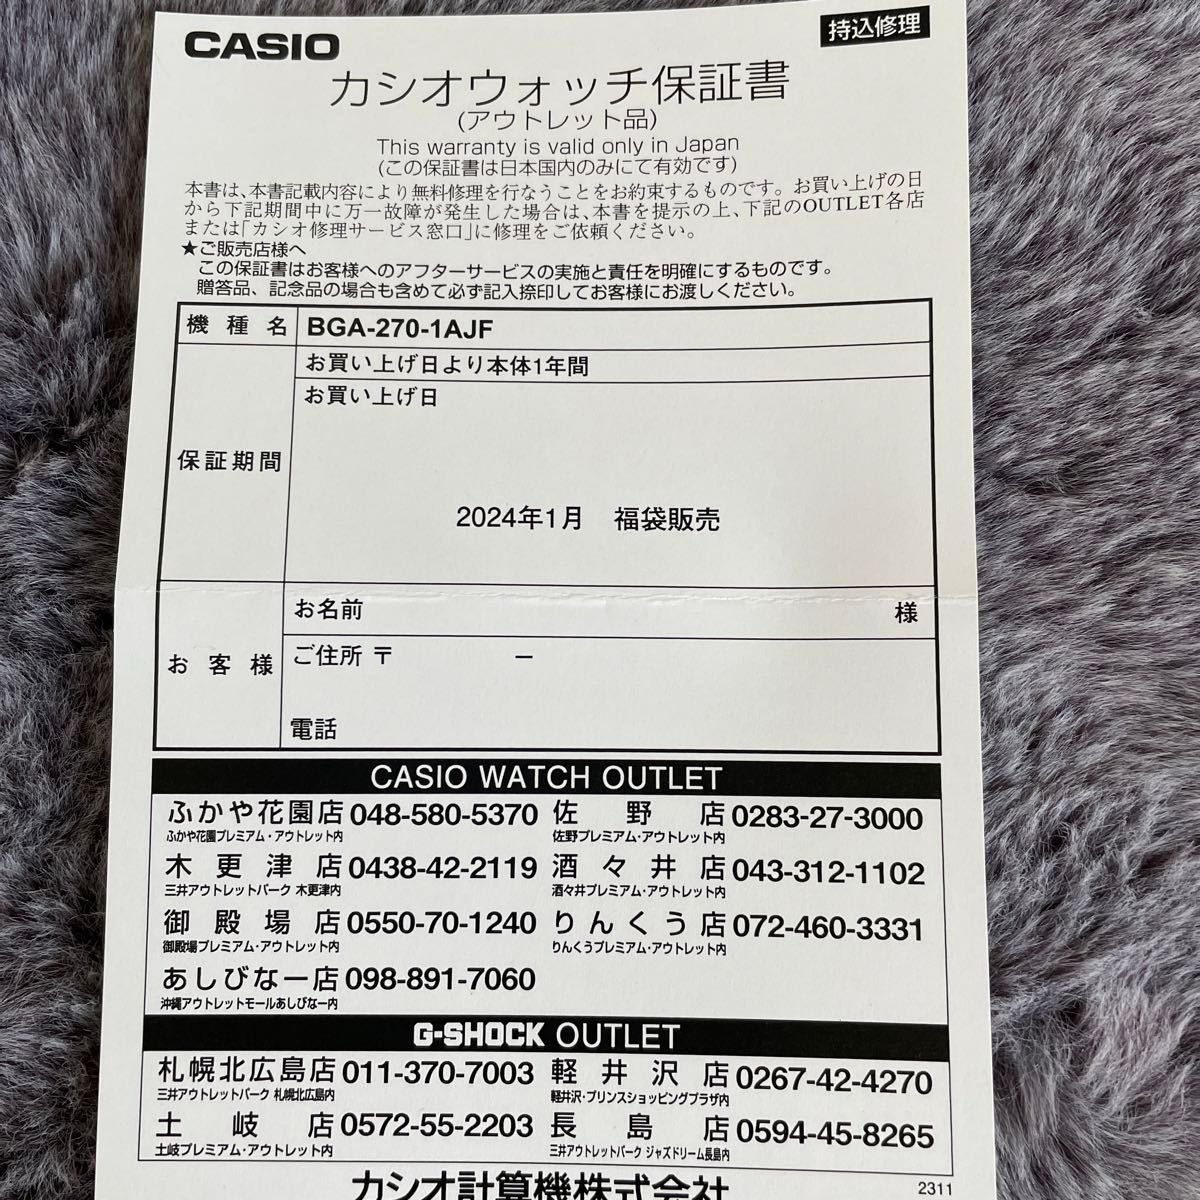 カシオ G-SHOCK BABY-G(ベビージー) CASIO G-SHOCK BGA-270-1AJF